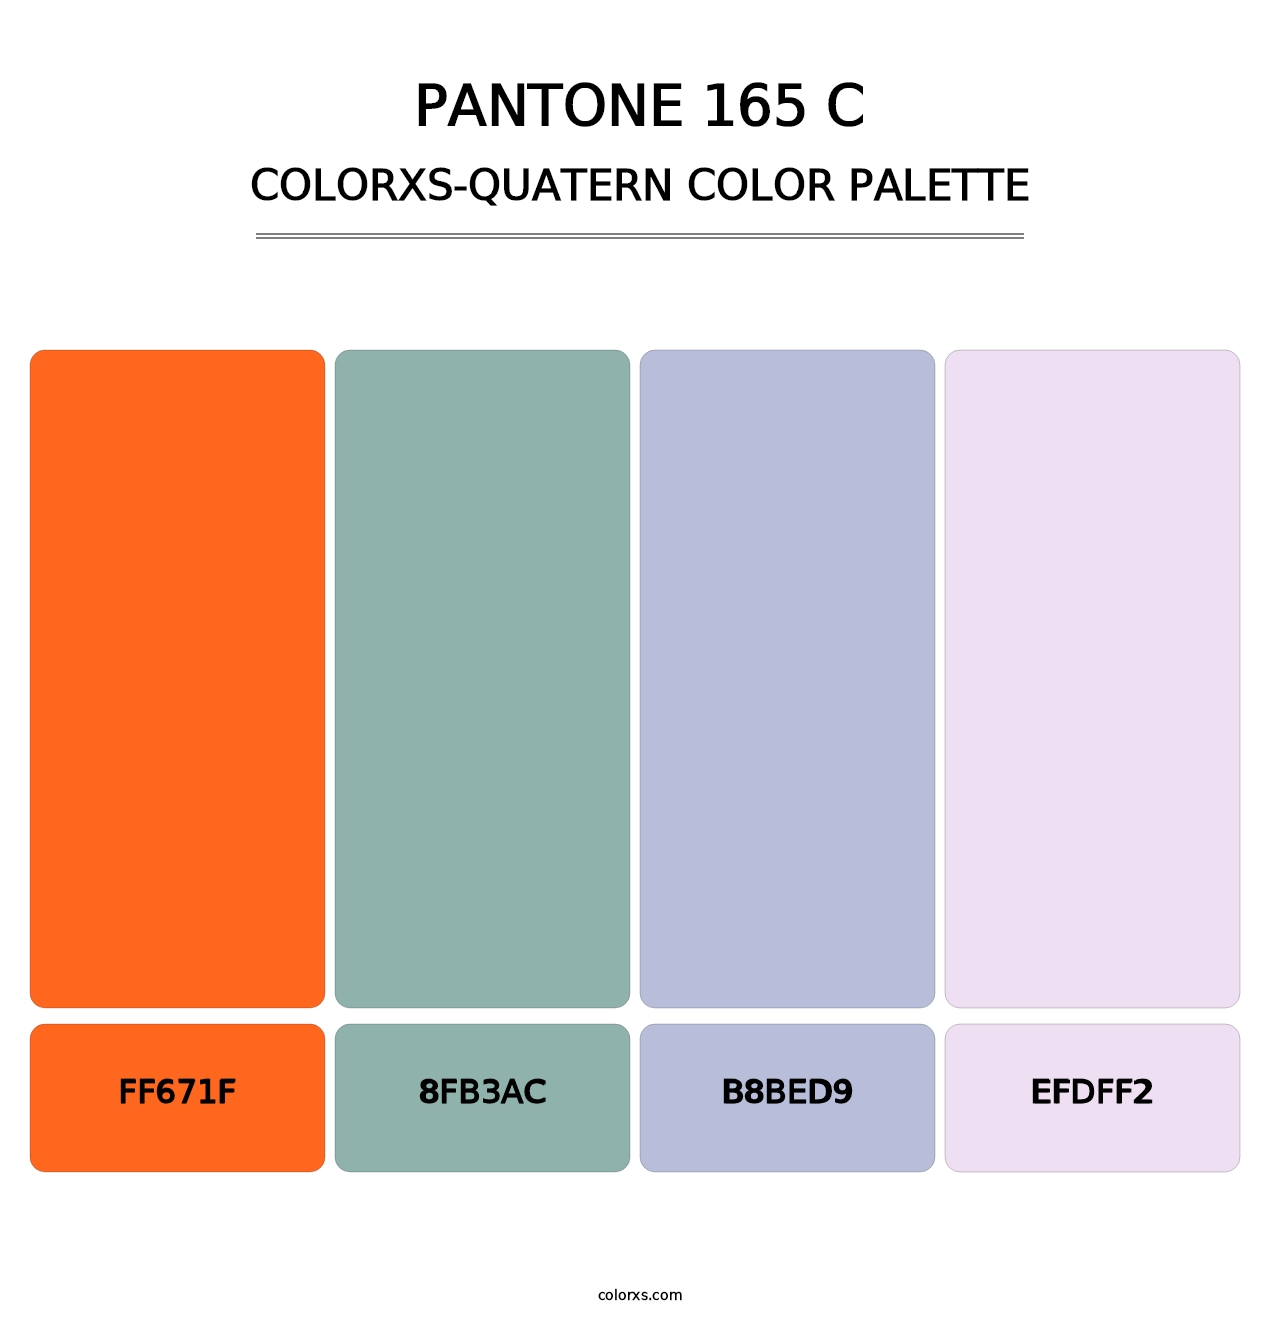 PANTONE 165 C - Colorxs Quatern Palette